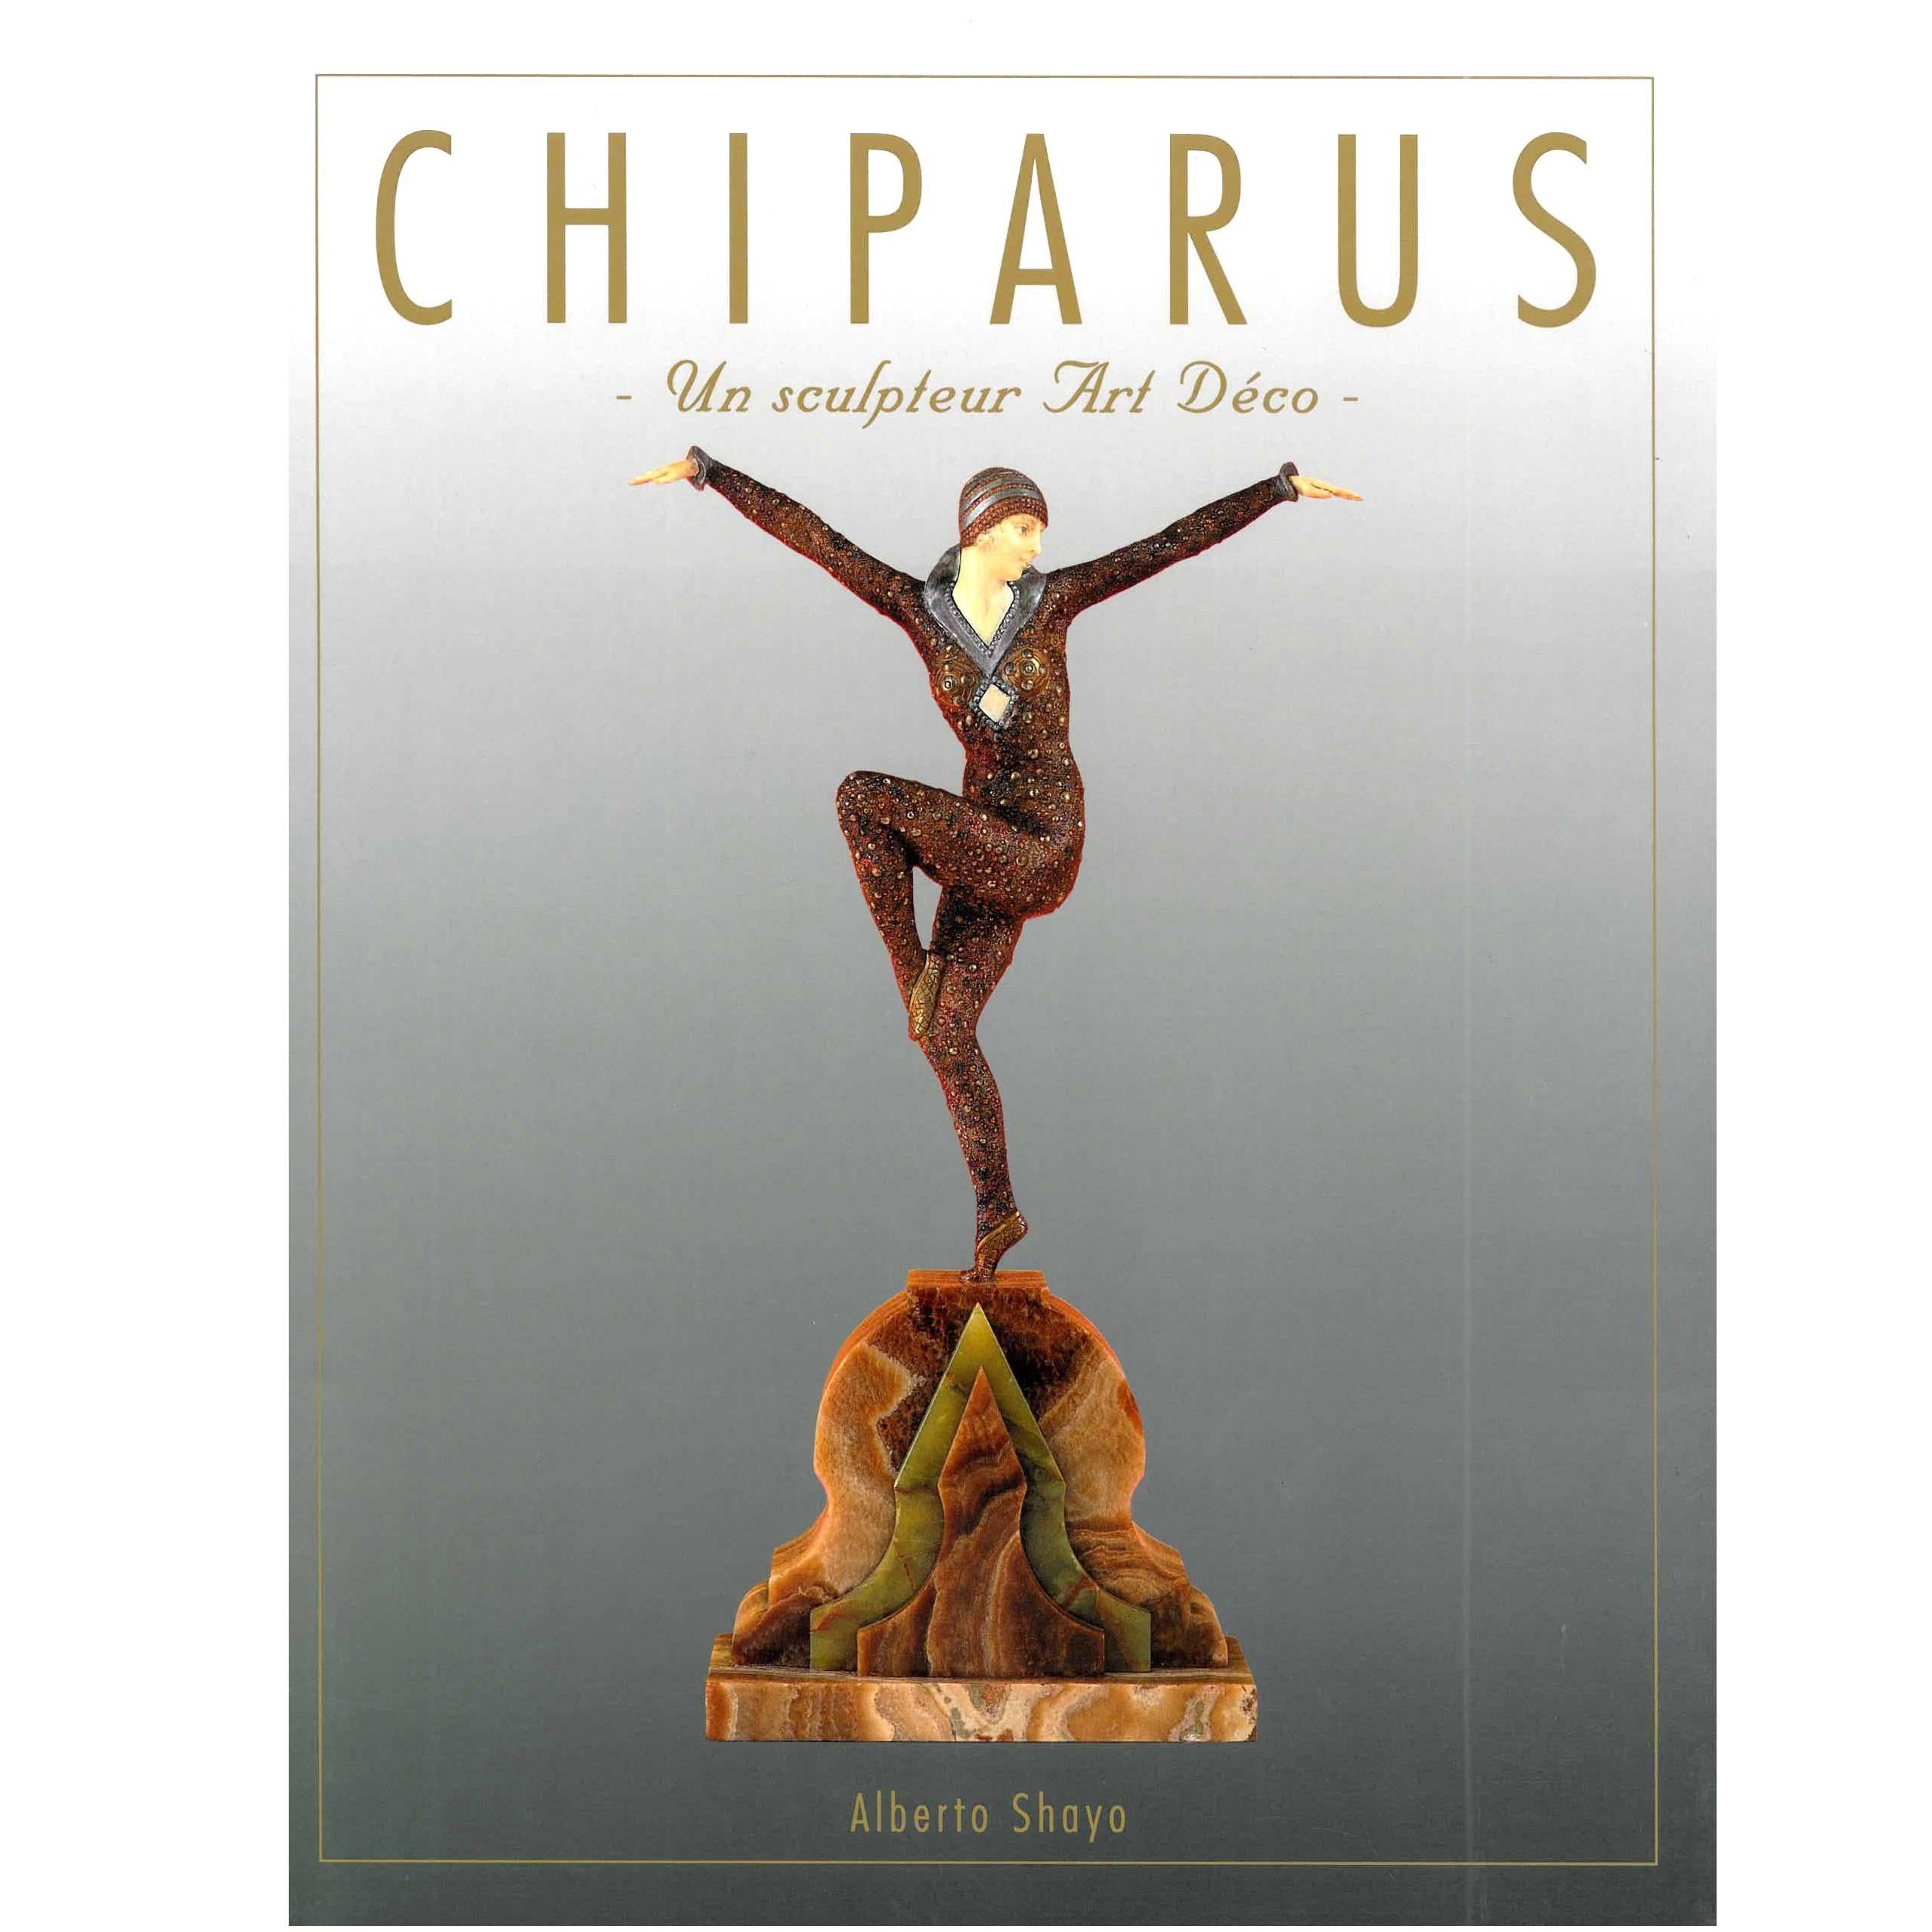 "CHIPARUS - Un Sculpteur Art Deco" Book